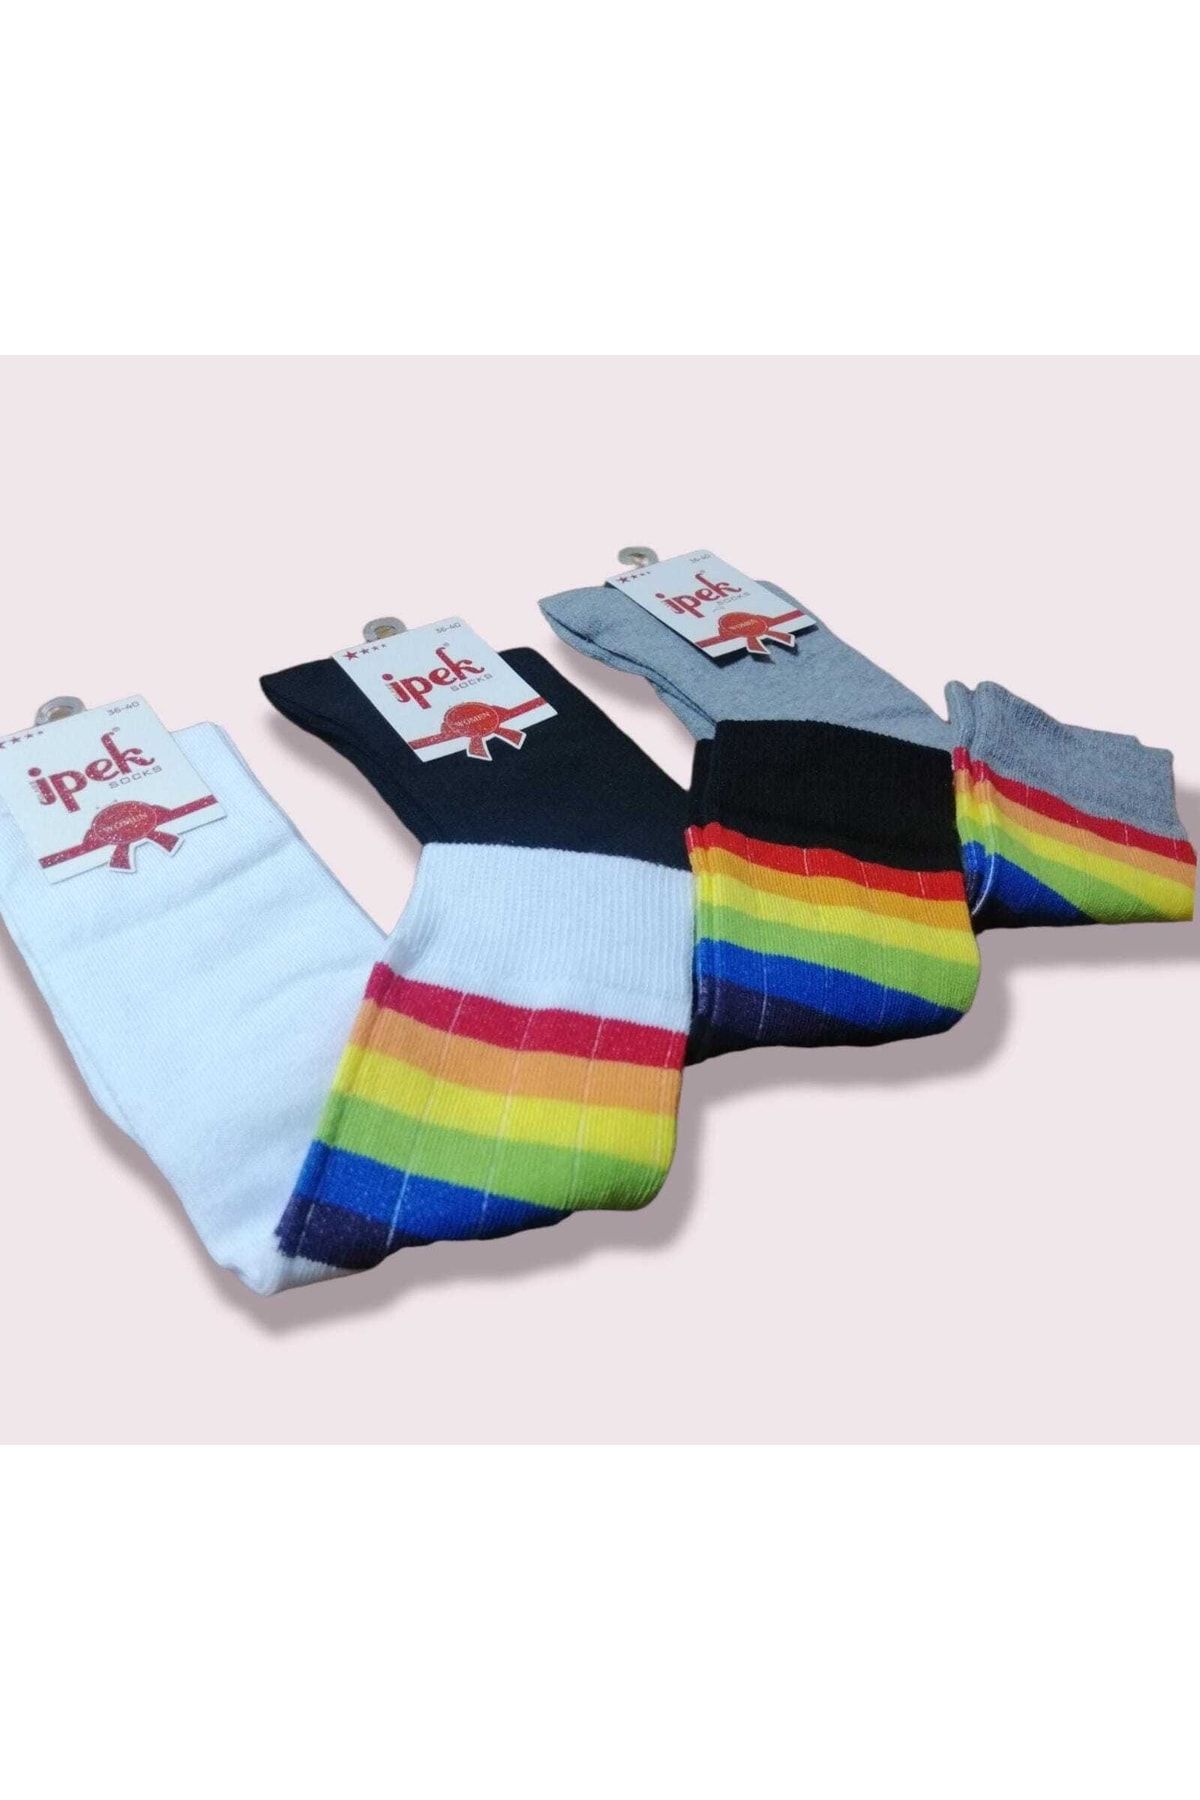 İpek Cotton Diz Altı  Çorabı 6 Çift Renkli